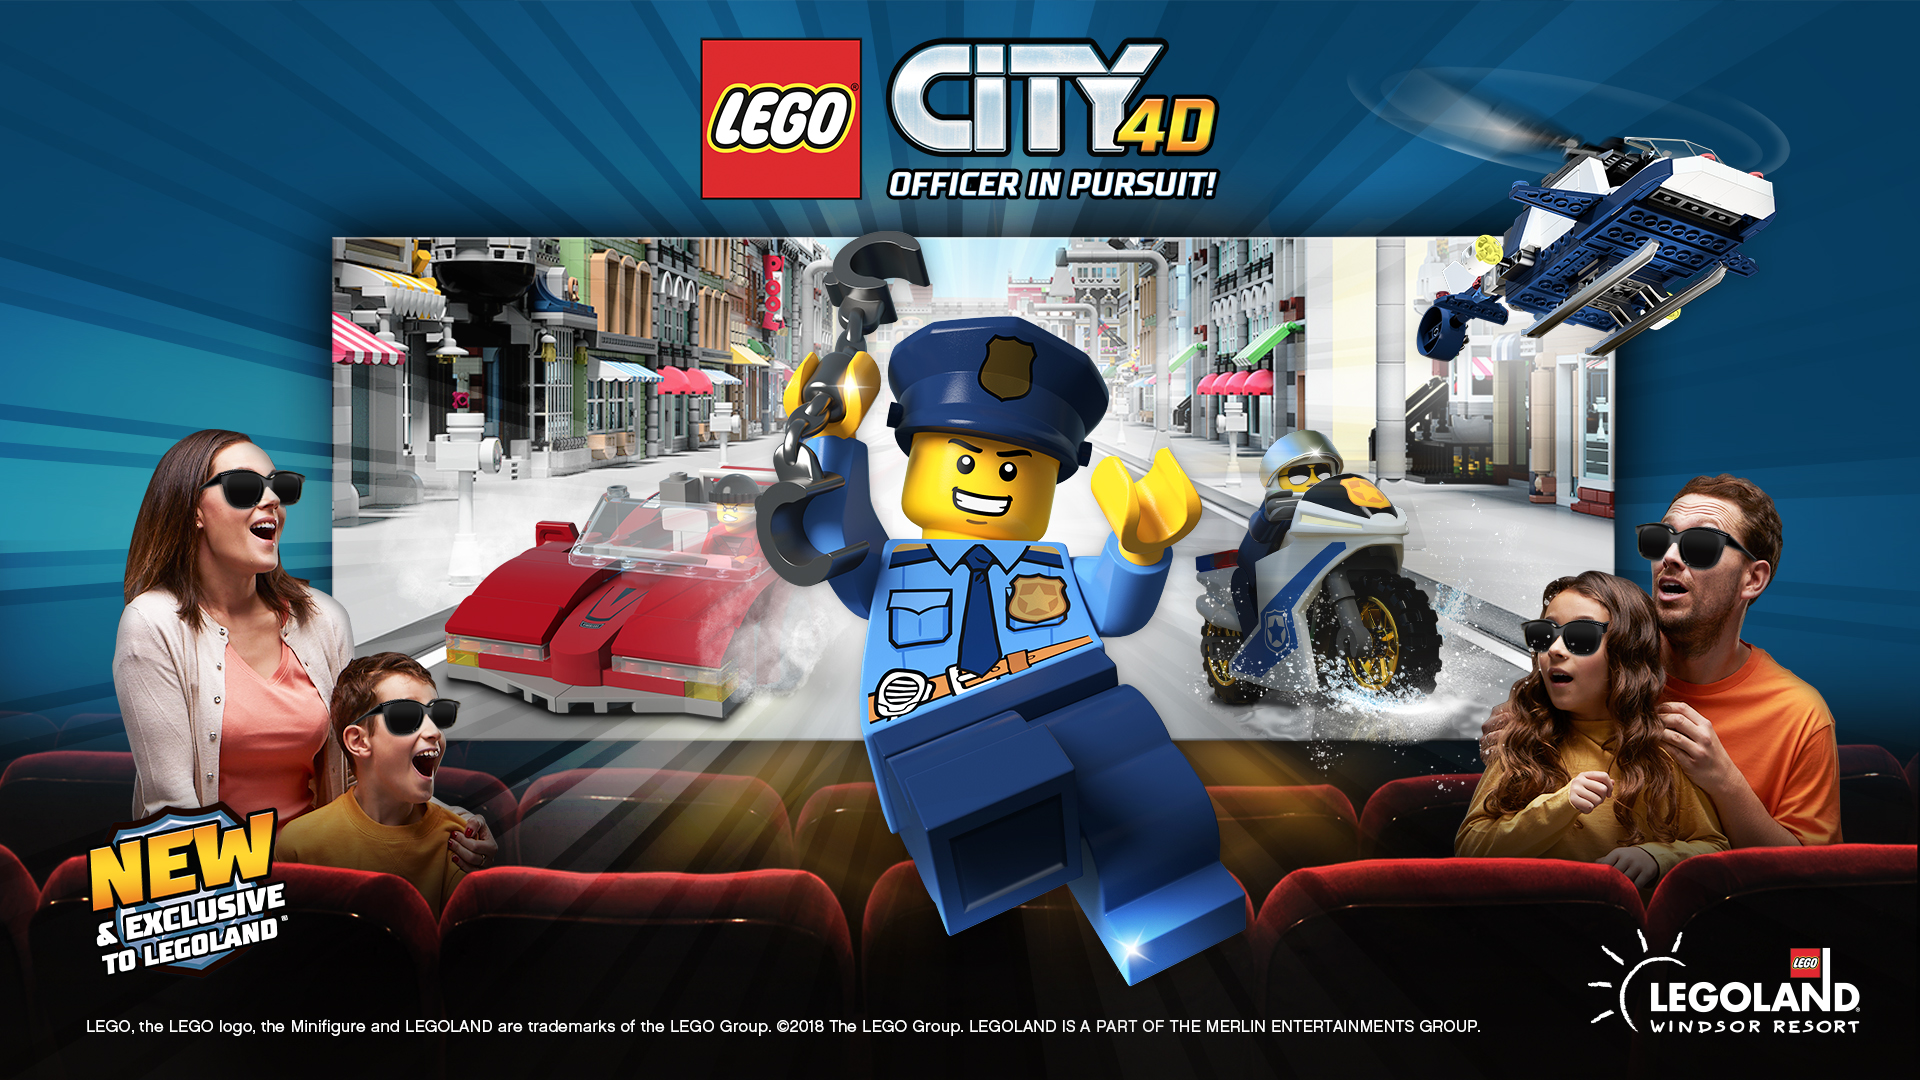 LEGO City 4D Officer In Pursuit! At LEGOLAND Windsor